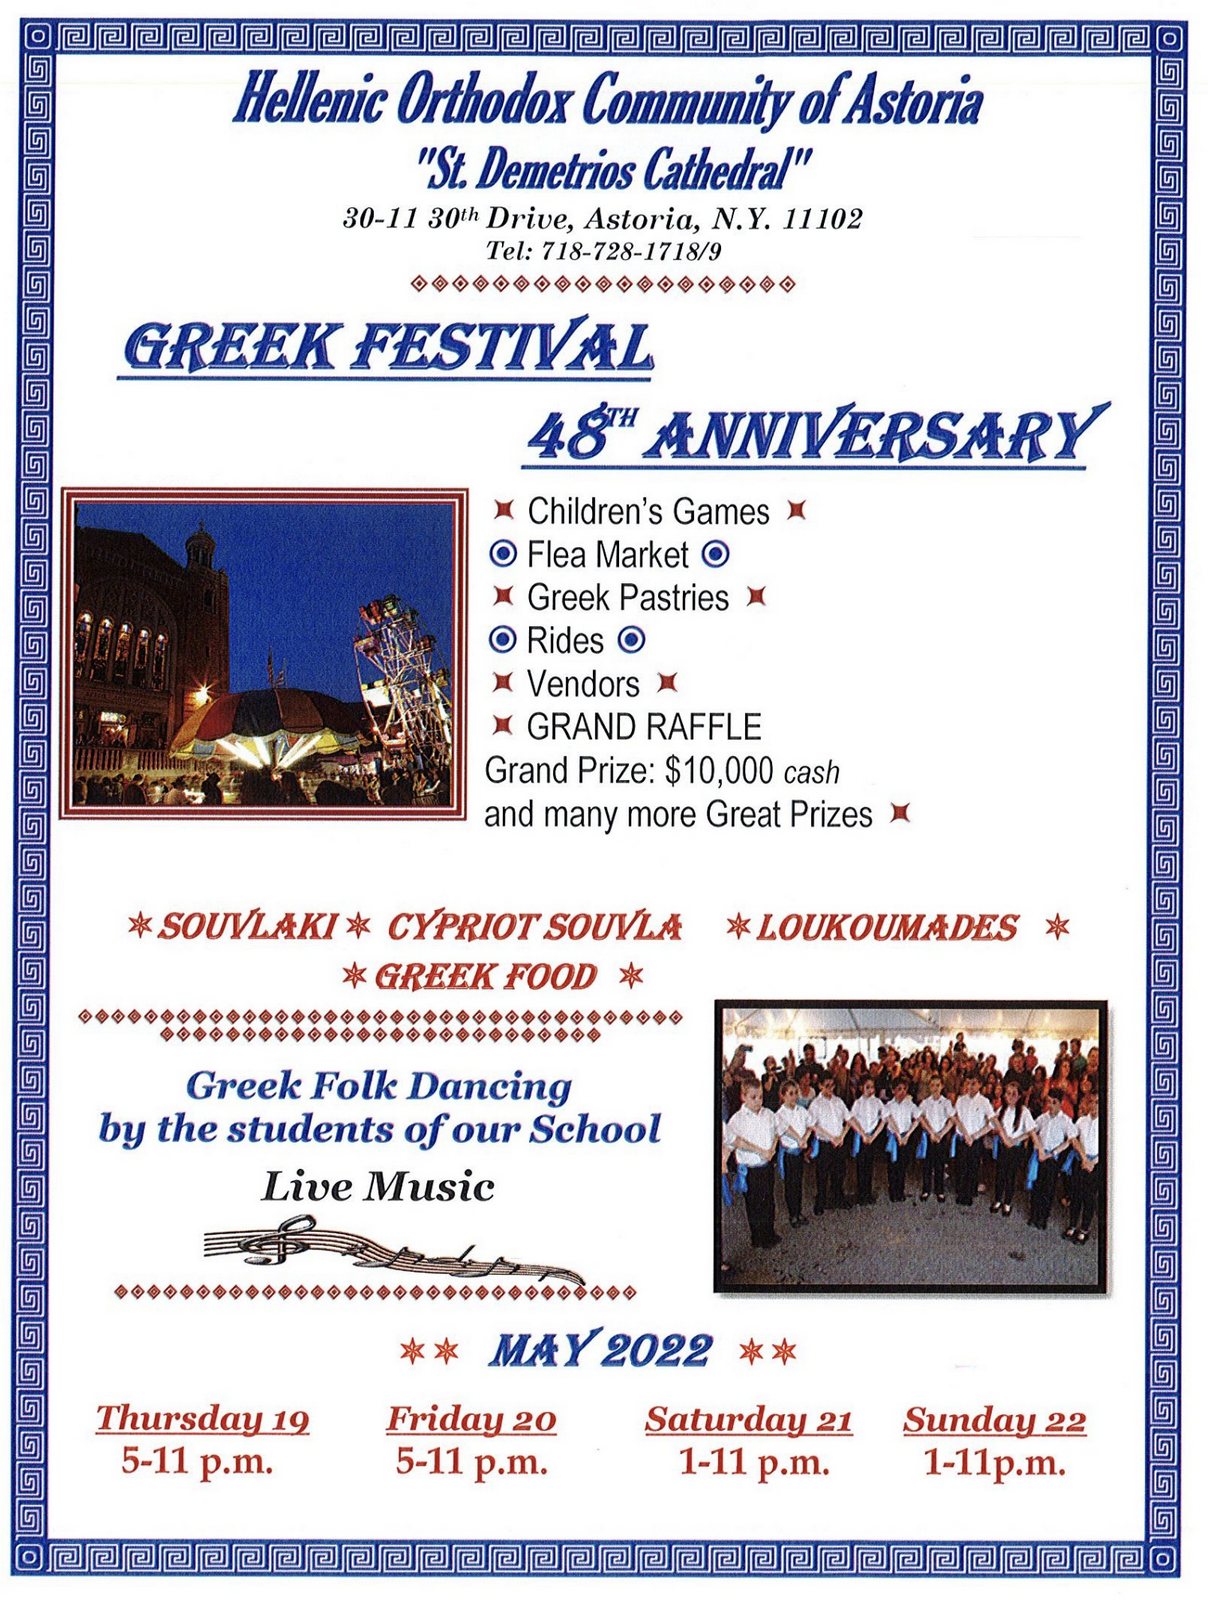 St. Demetrios Greek Festival 2022 Astoria, NY NY Carnivals